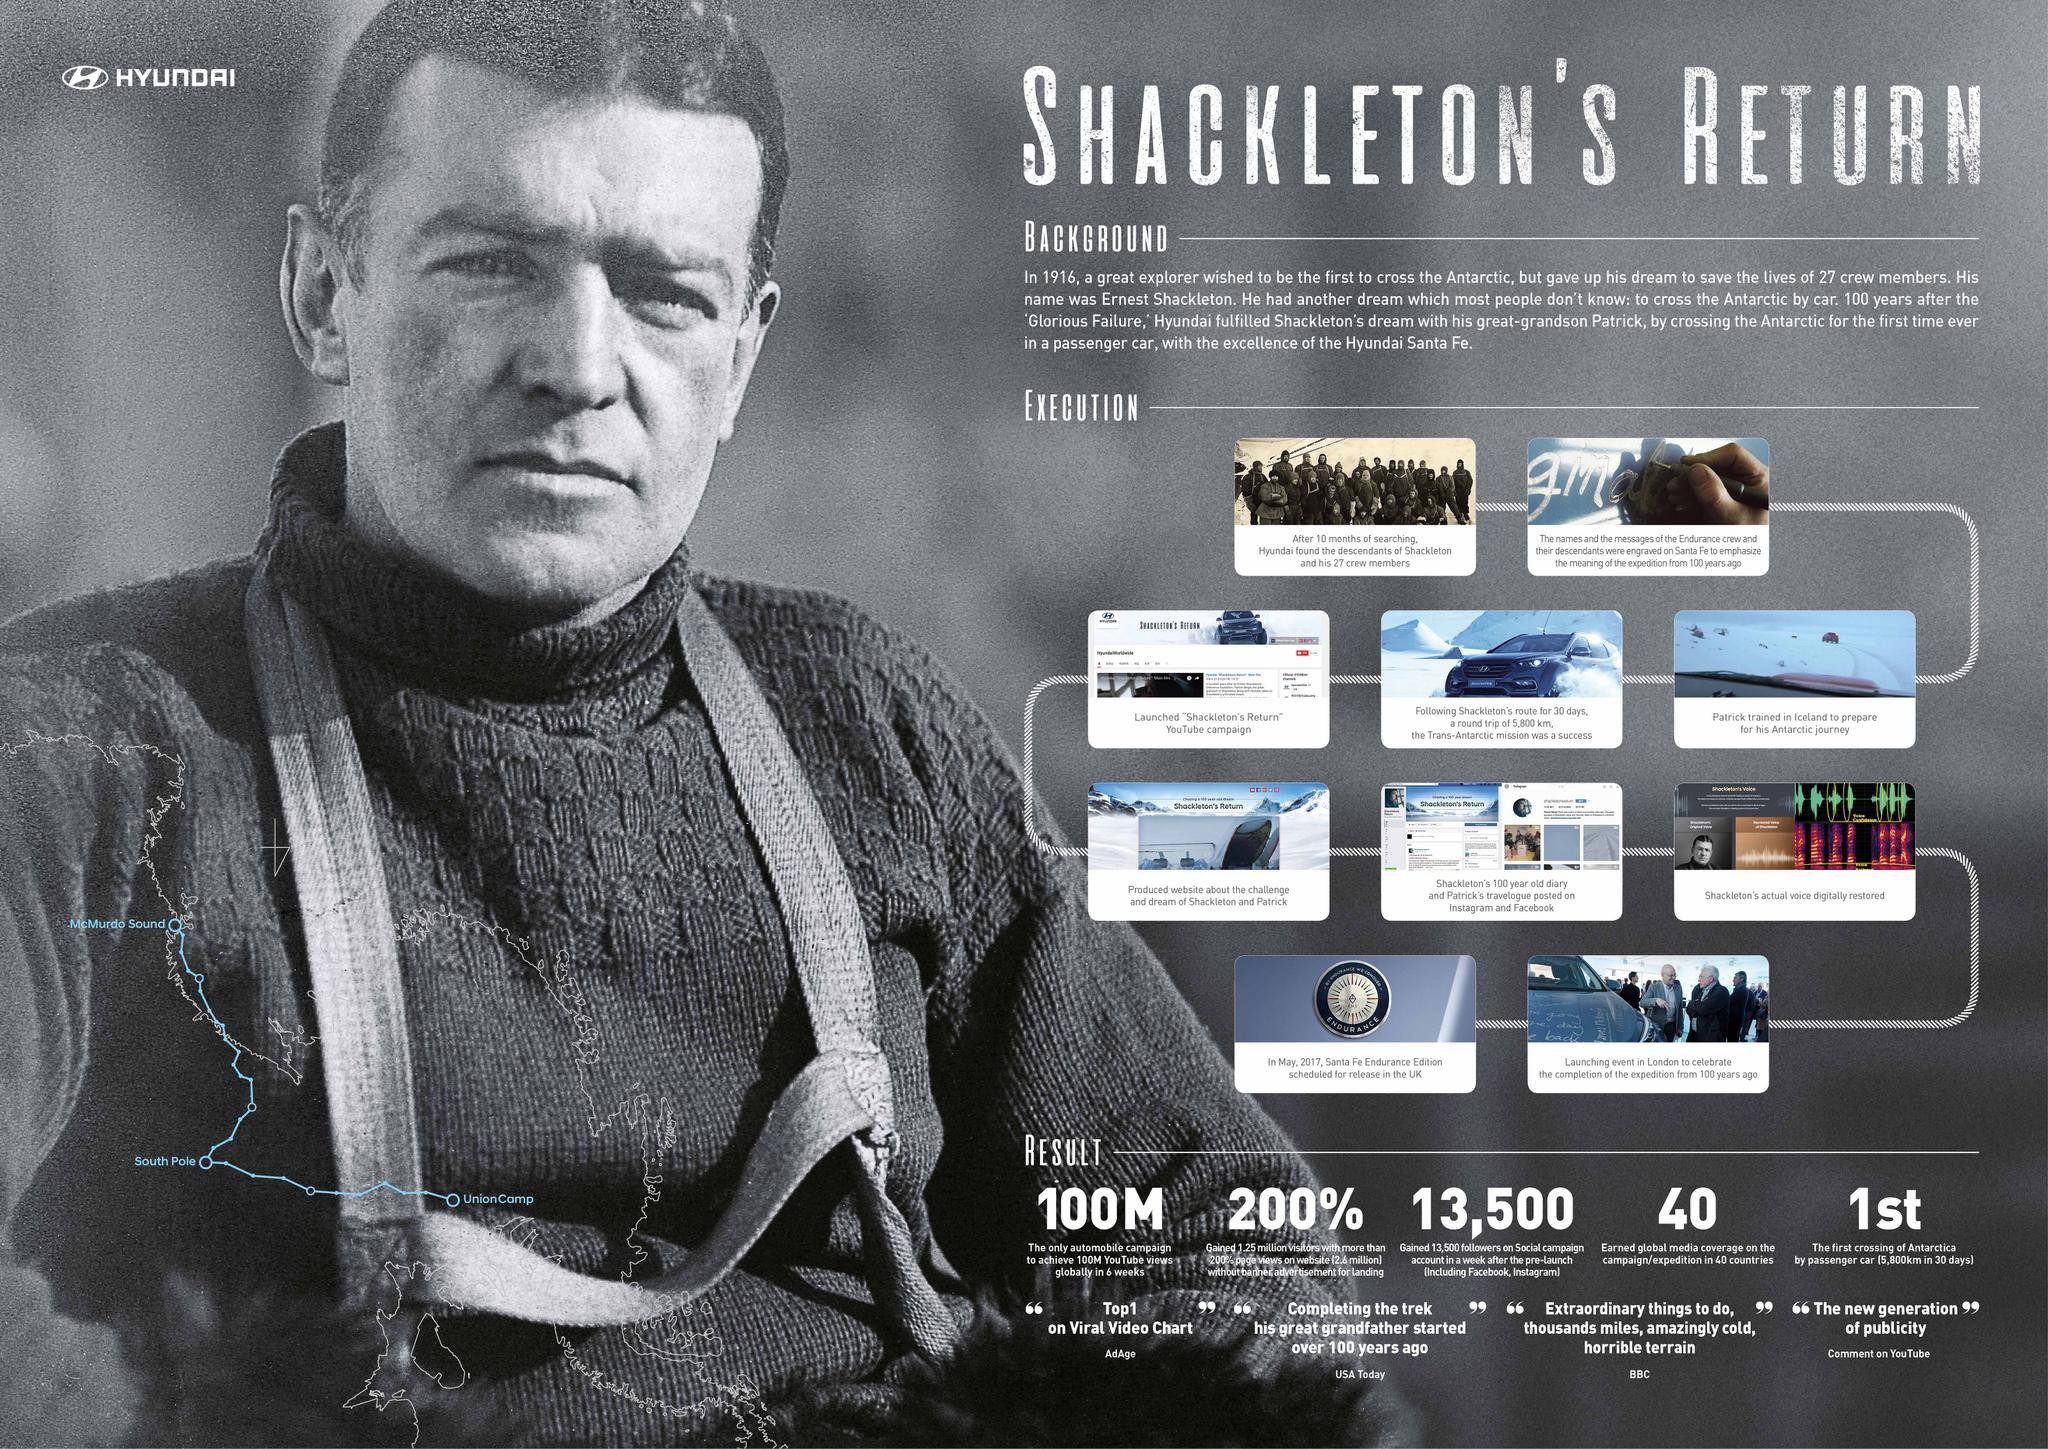 Shackleton's Return